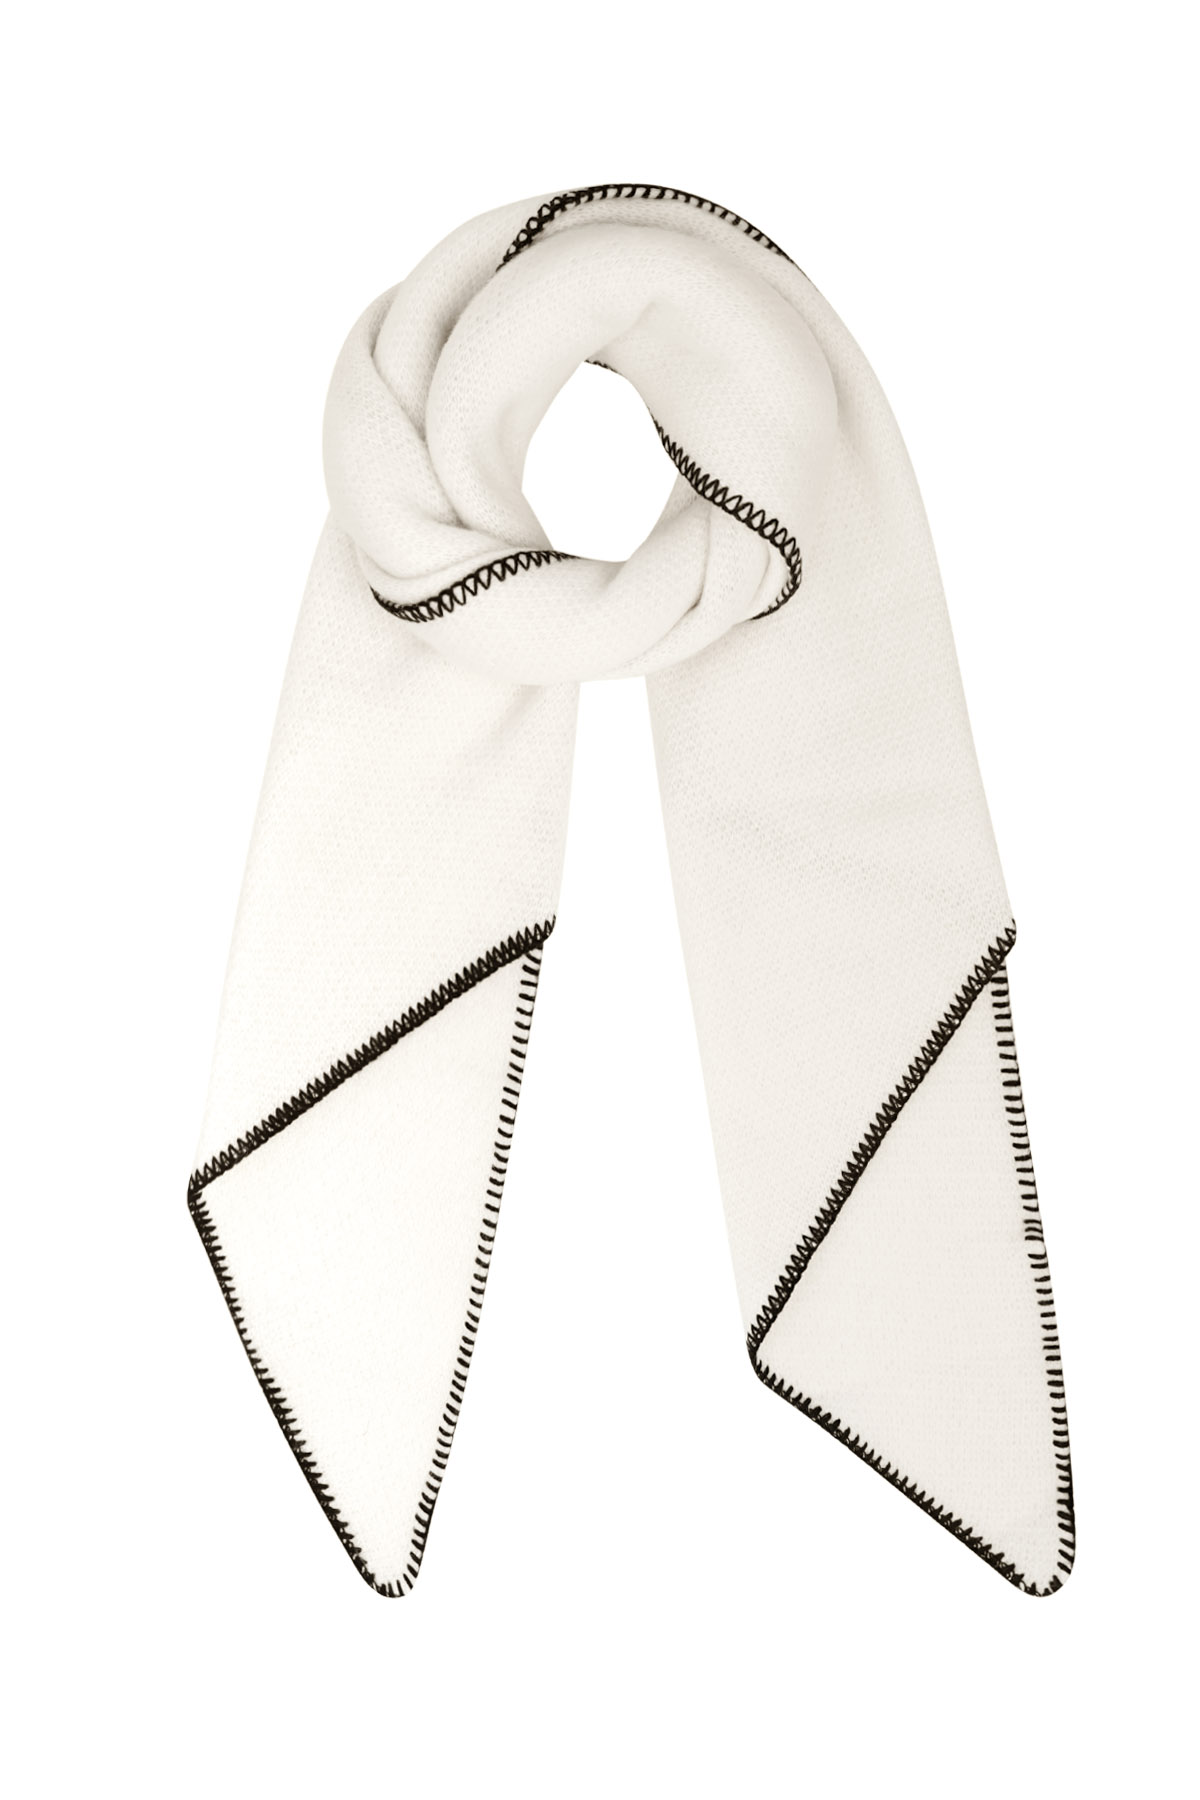 Bufanda de invierno monocolor con costuras negras - blanco h5 